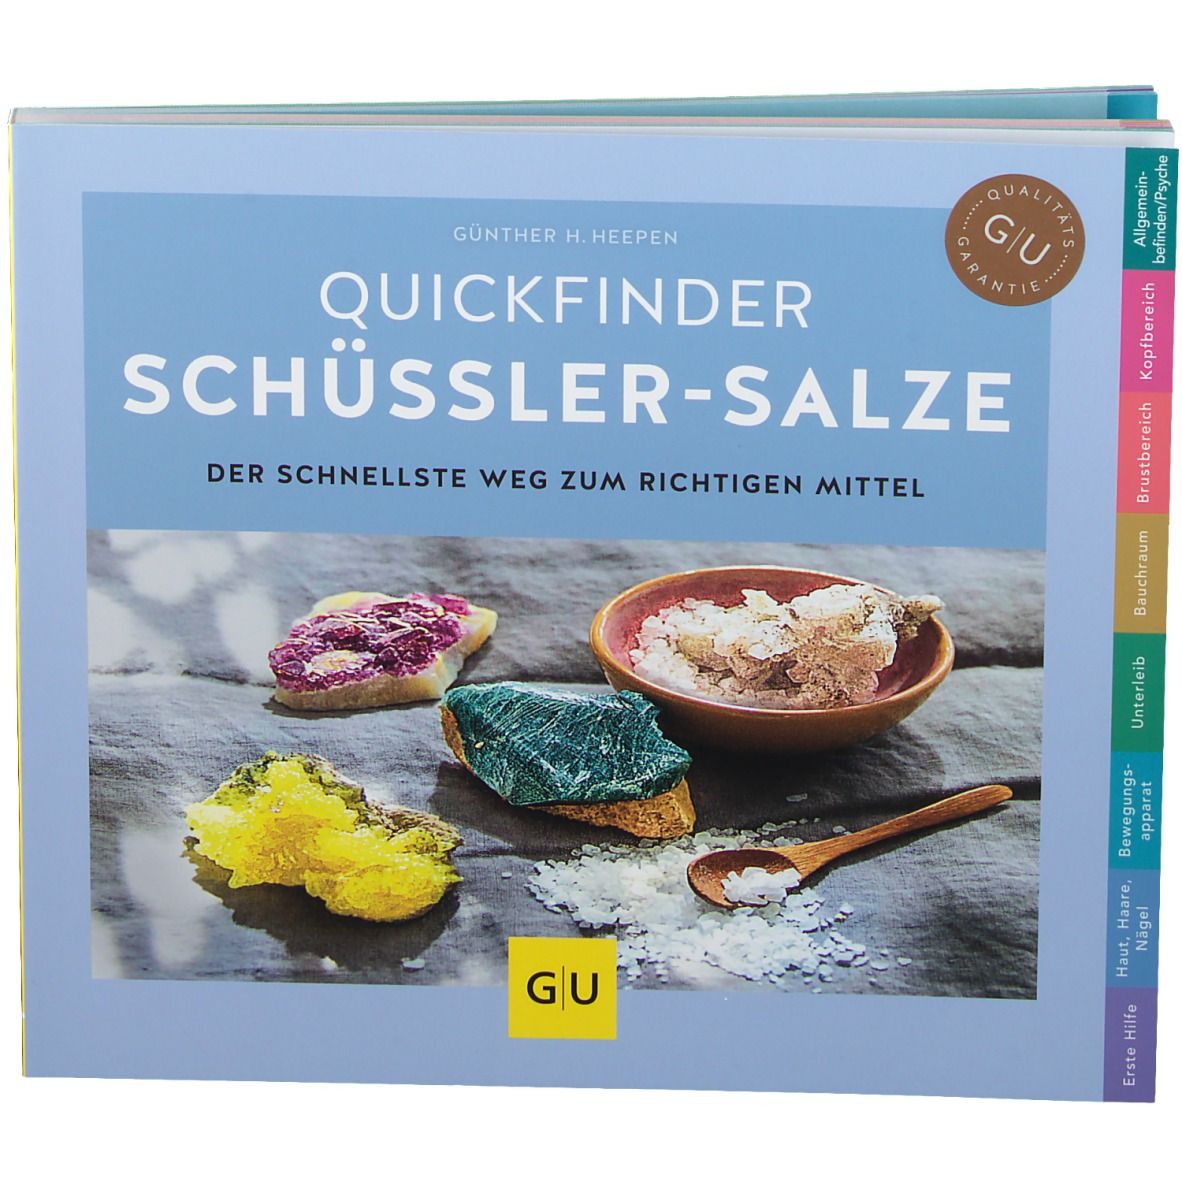 Image of GU Quickfinder Schüssler-Salze